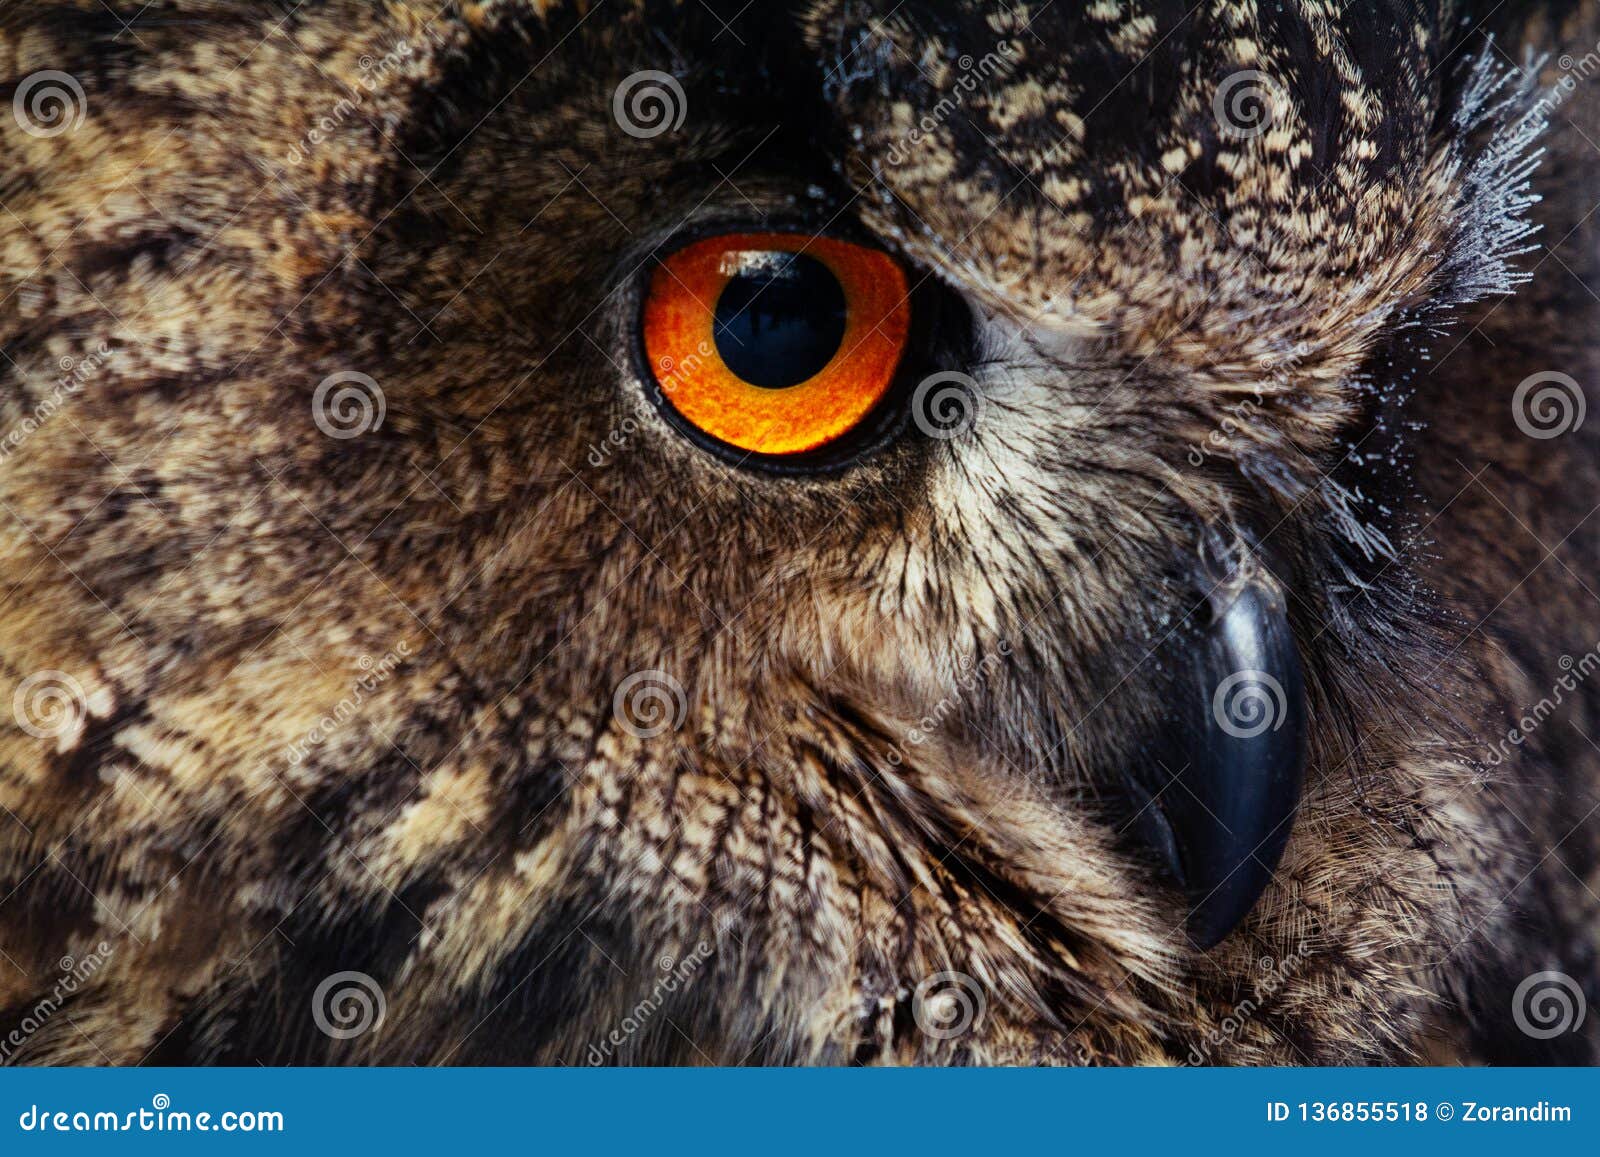 owls portrait. owl eyes. - image